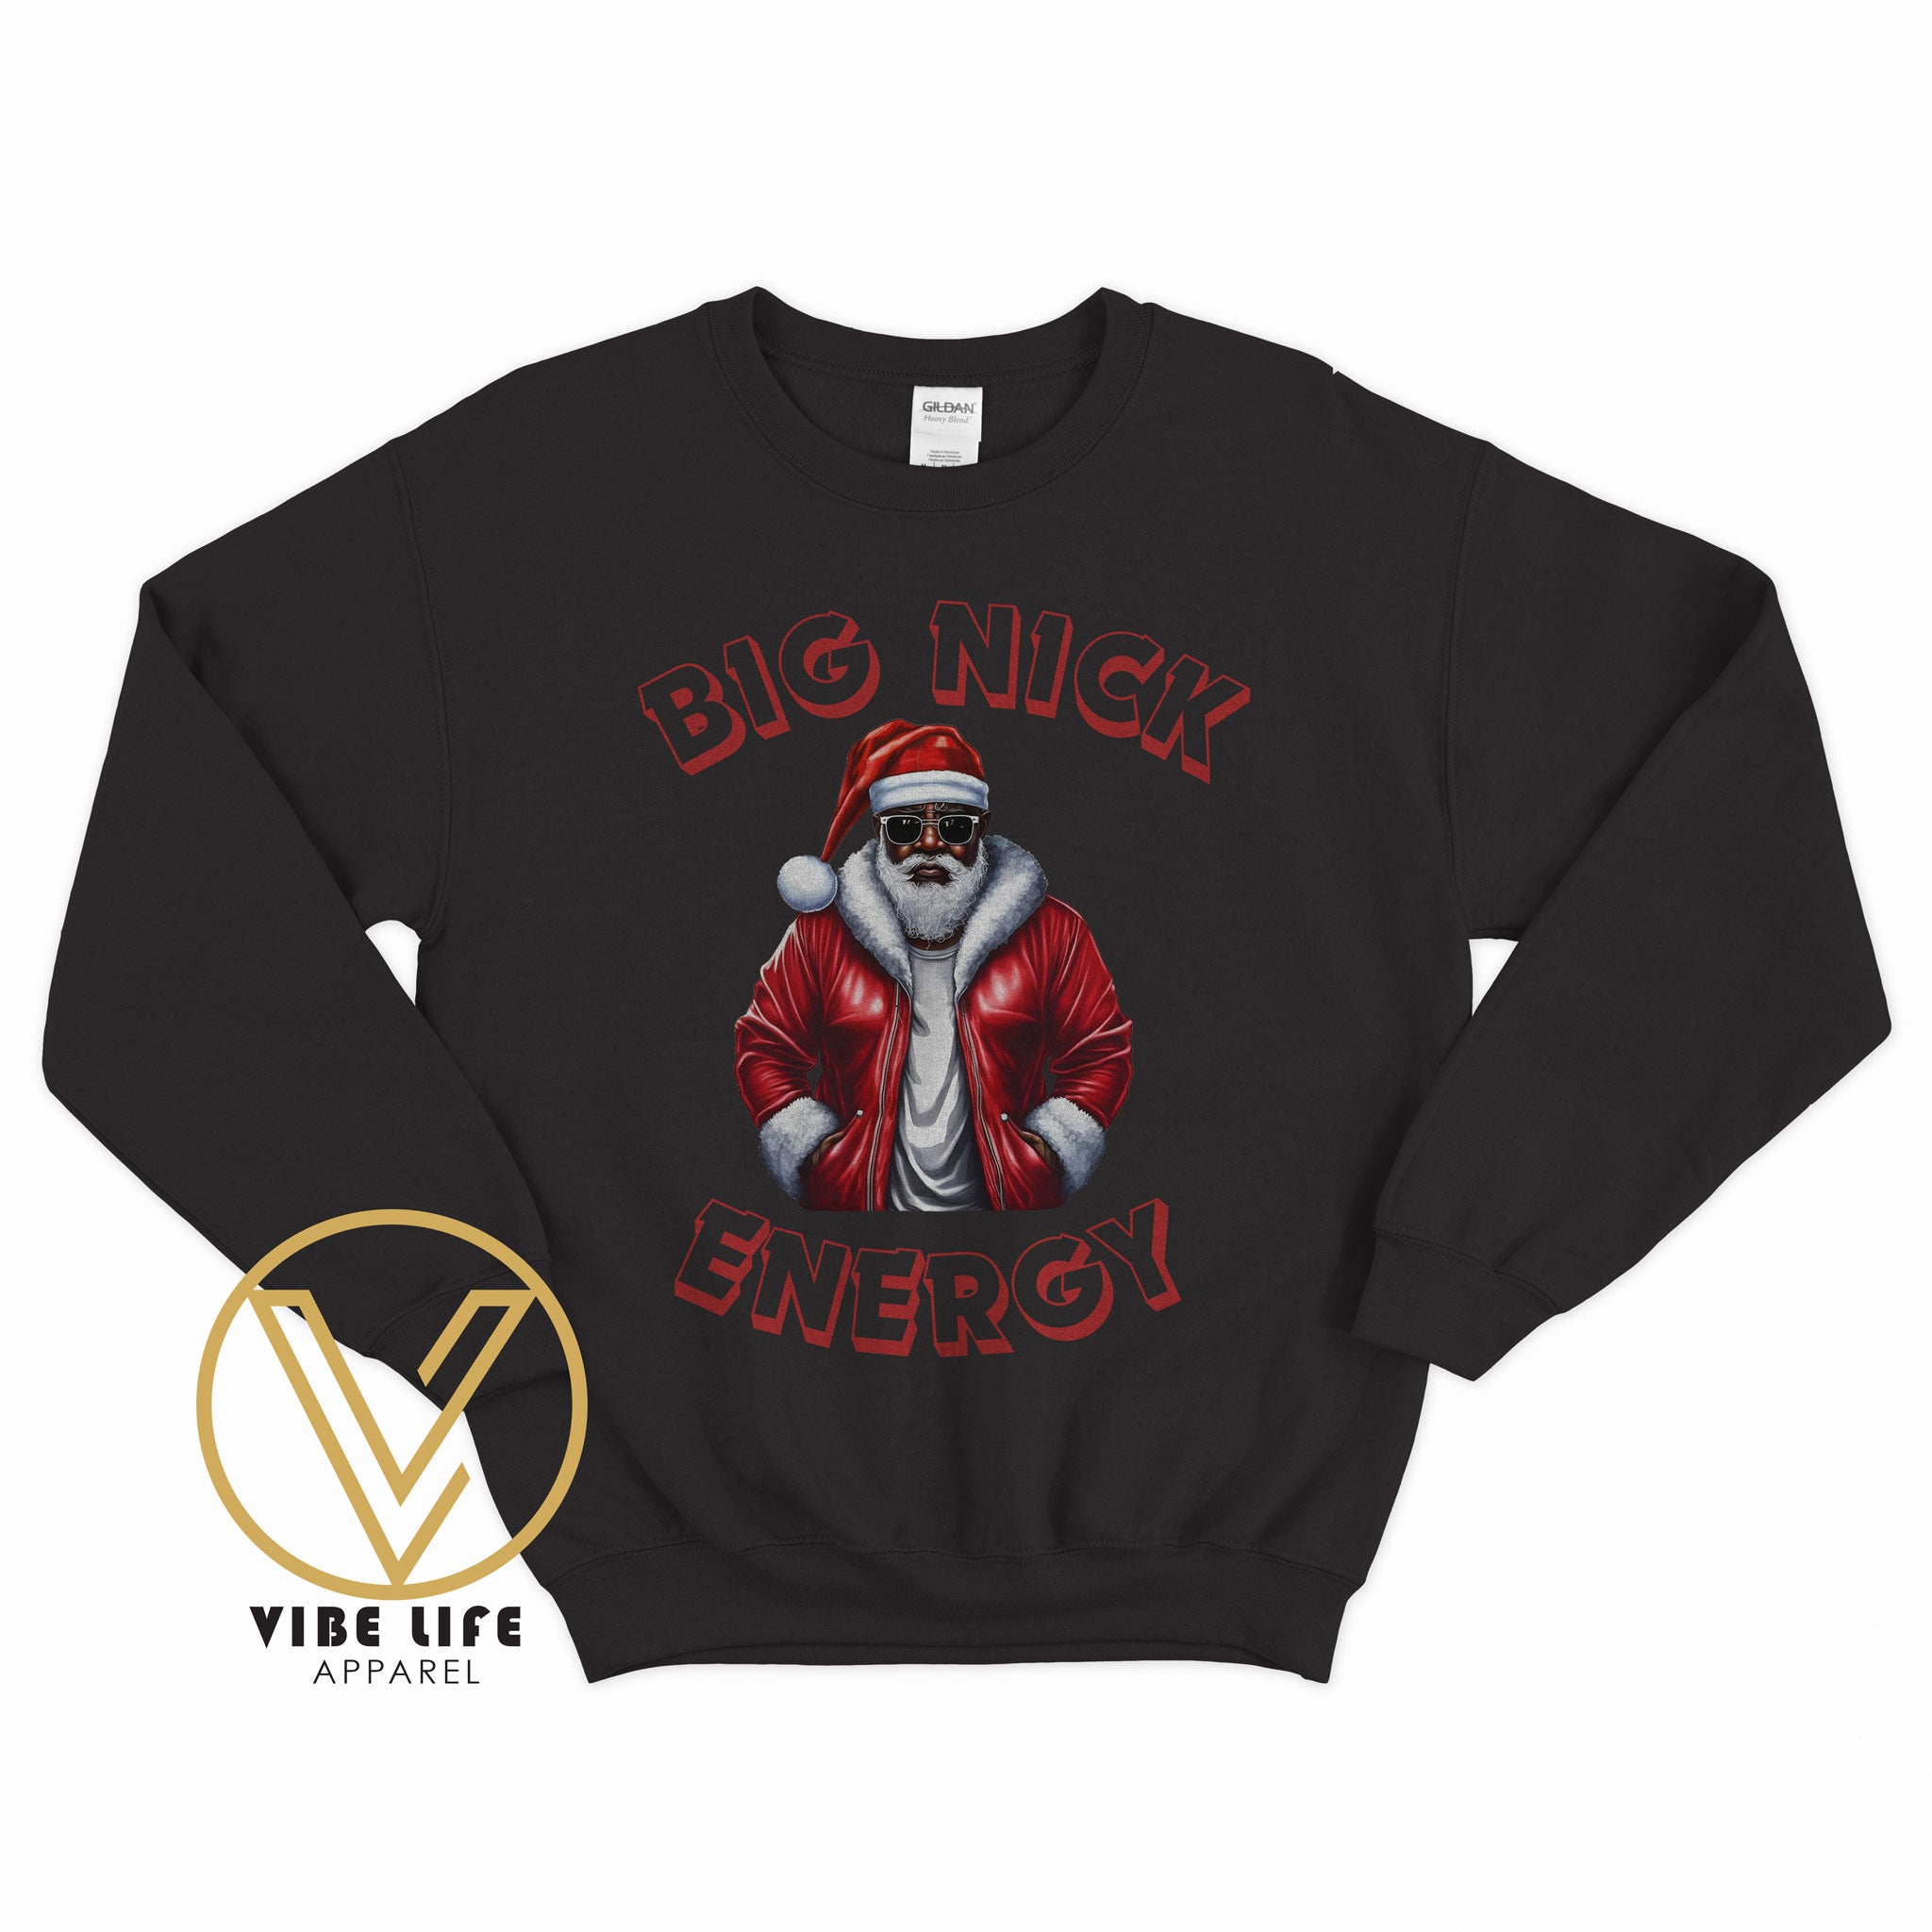 Big NICK Energy - Sweatshirt